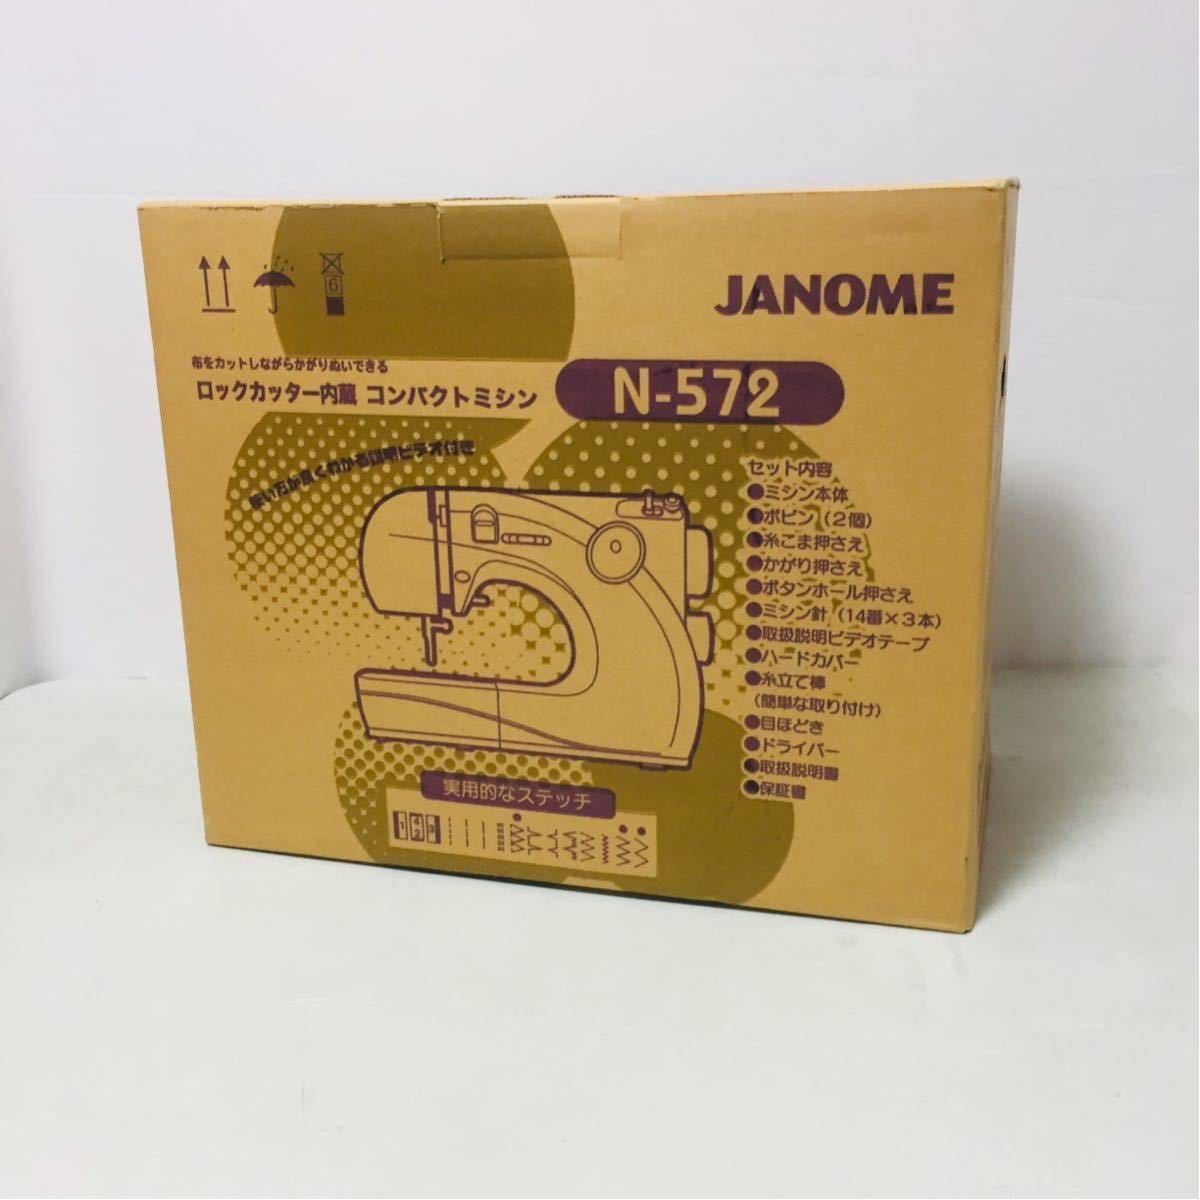 【最安値】 【未使用新品】 JANOME ジャノメ 661型 N-572 ロックカッター コンパクトミシン j0362